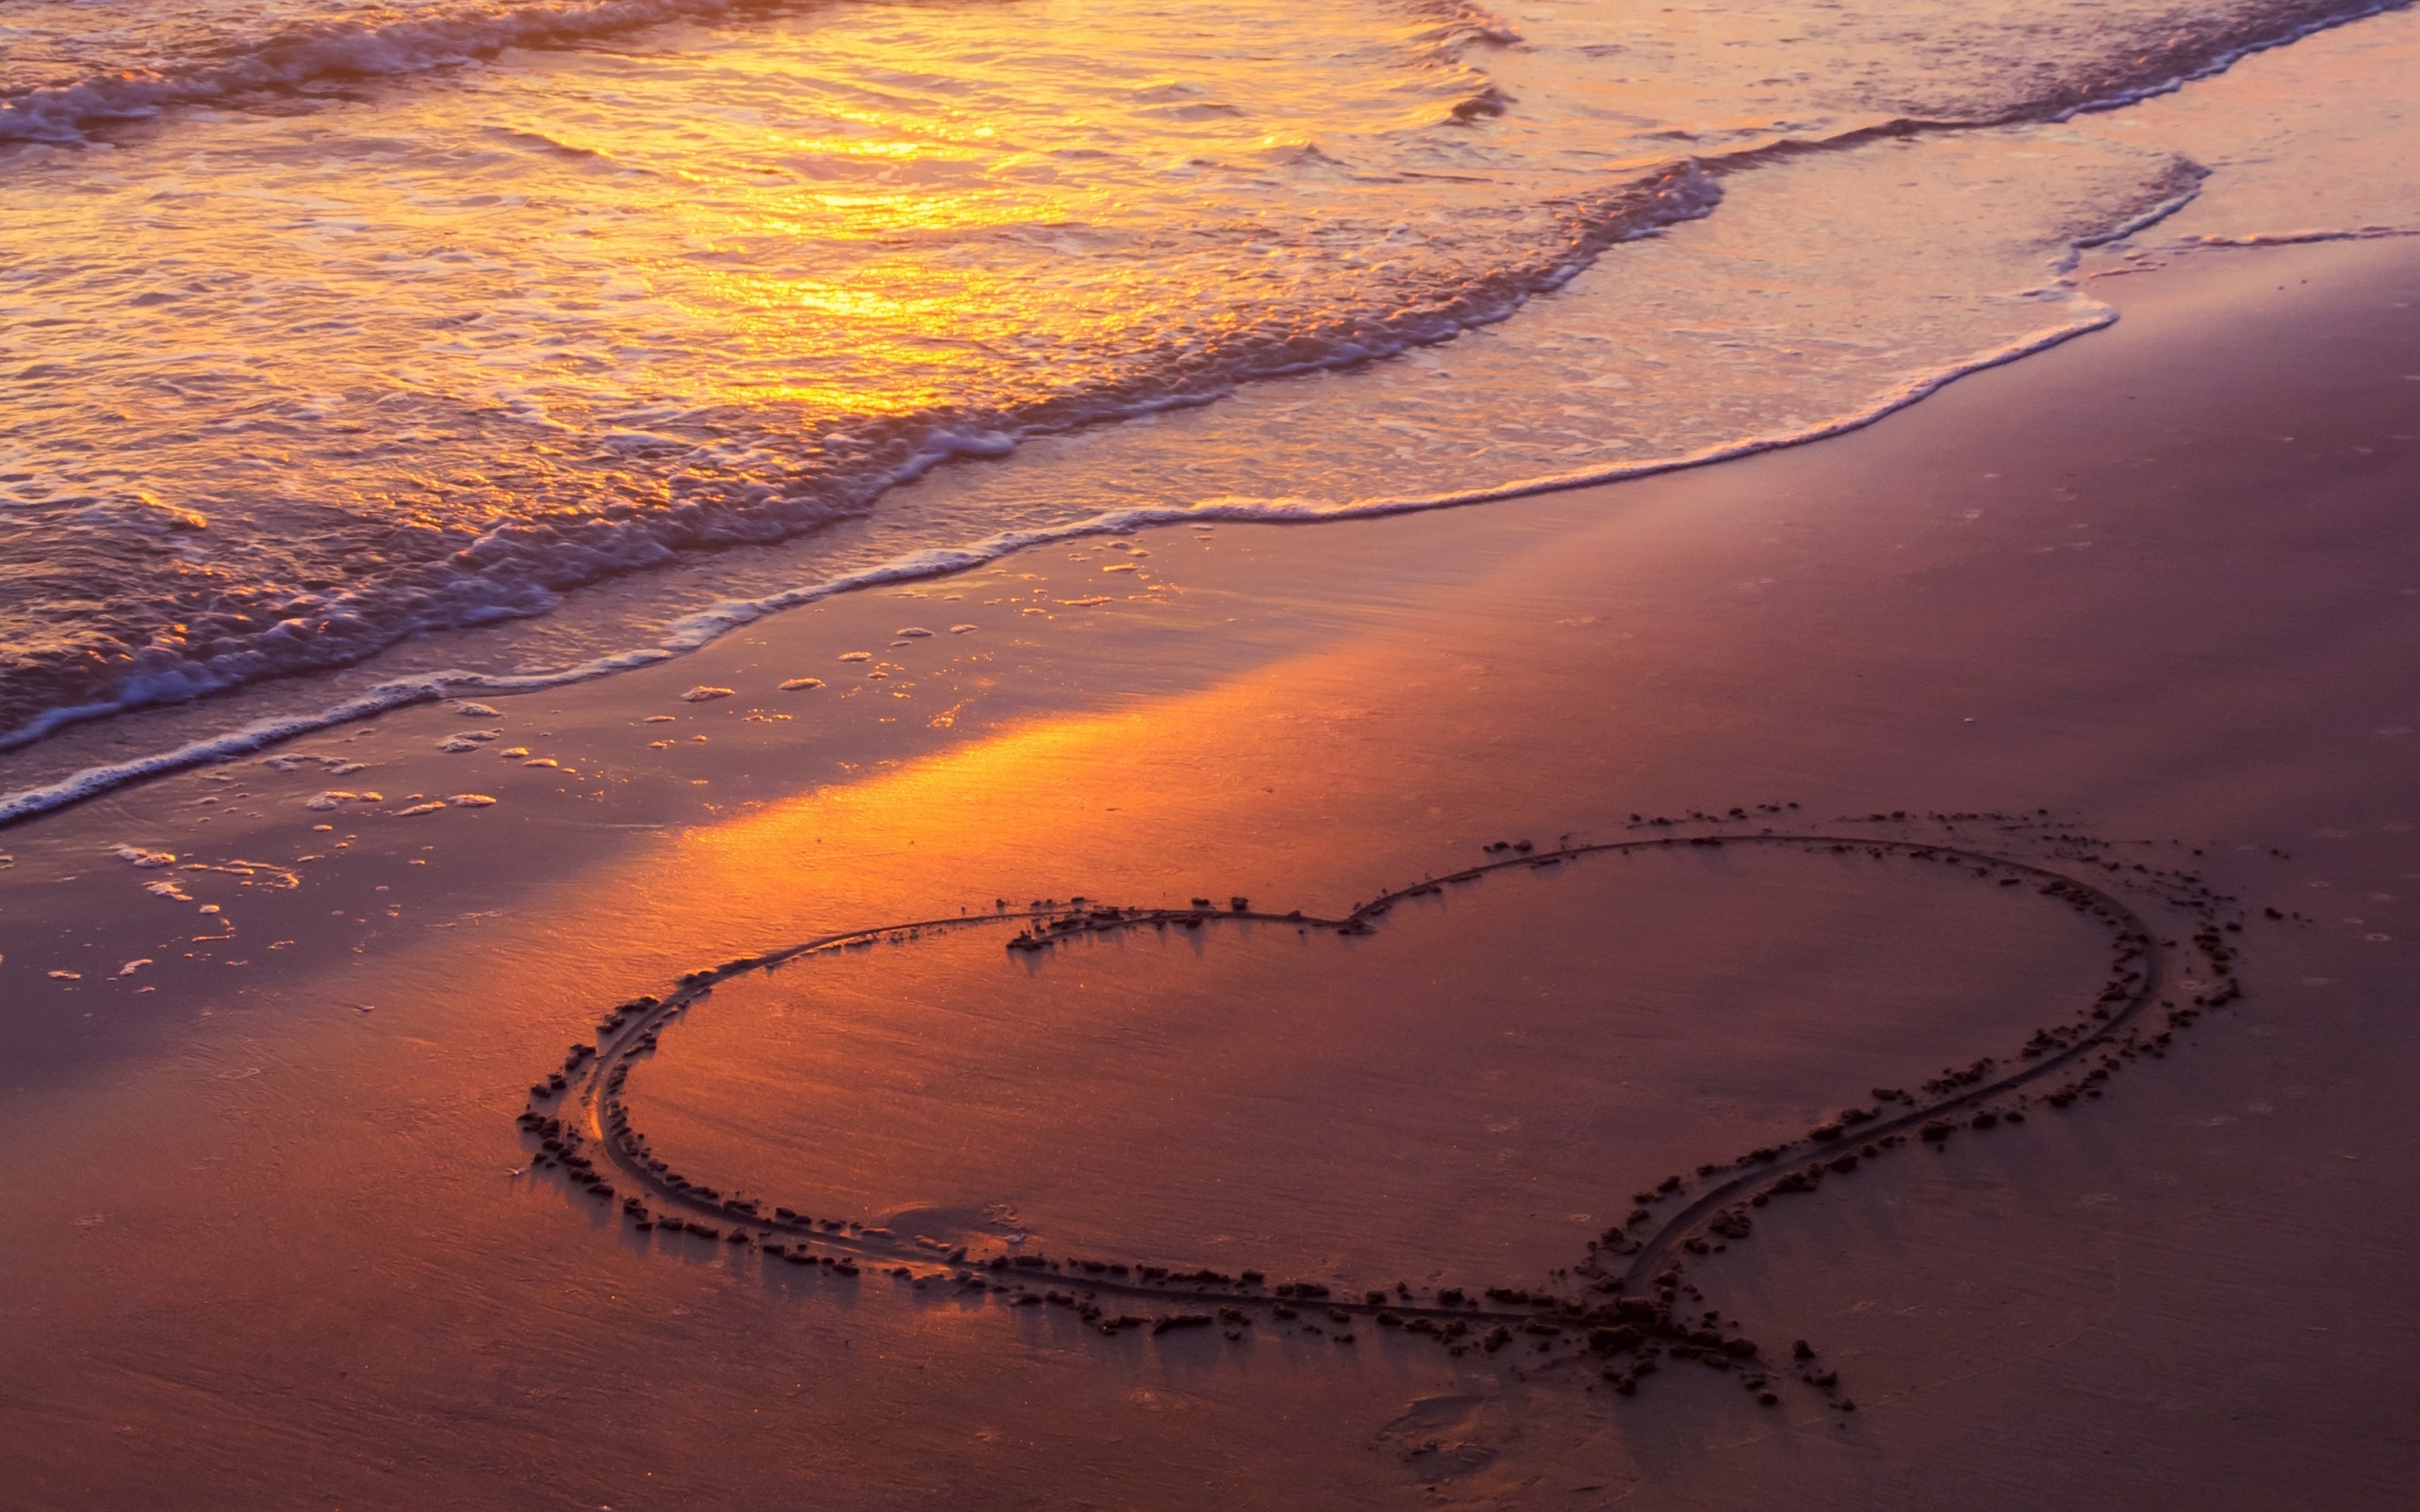 Большое сердце на песке у моря